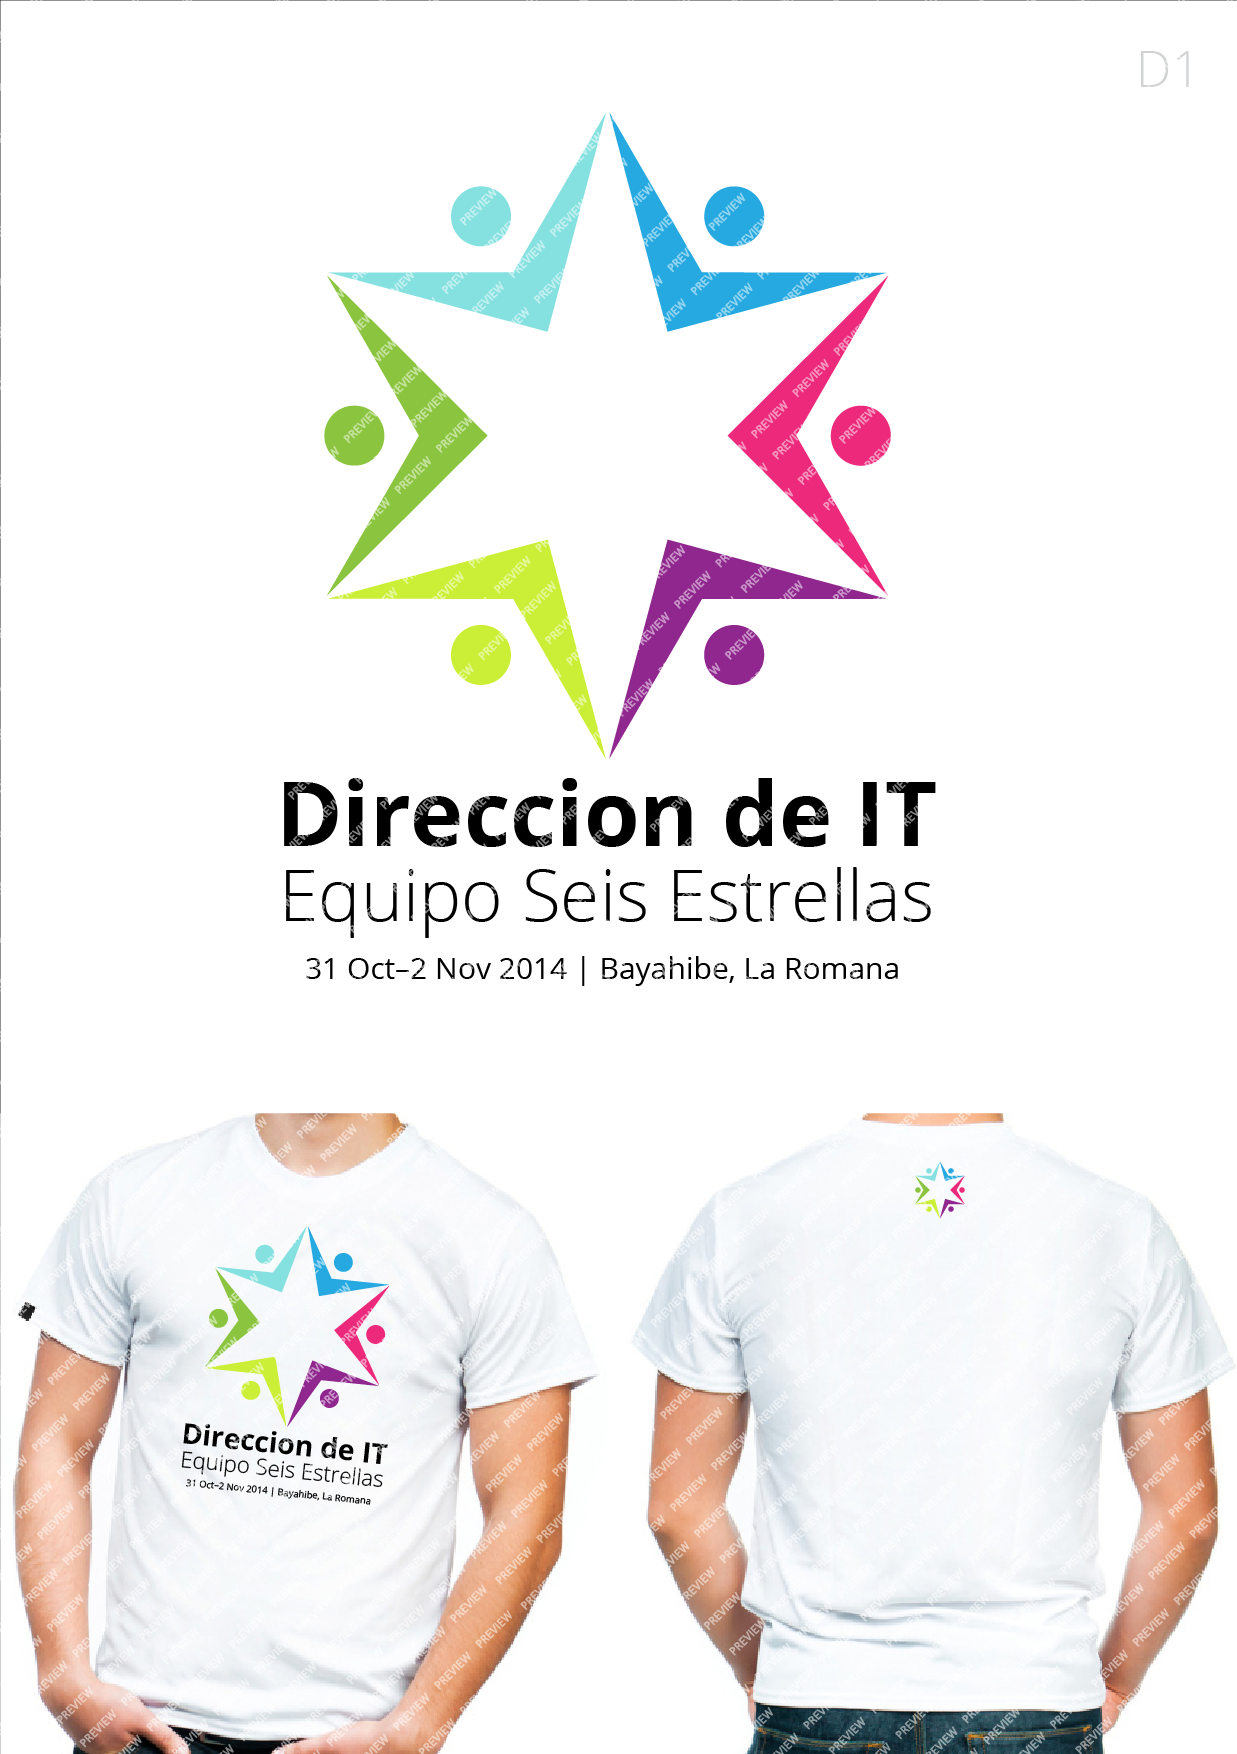 Direccion de IT logo1.png